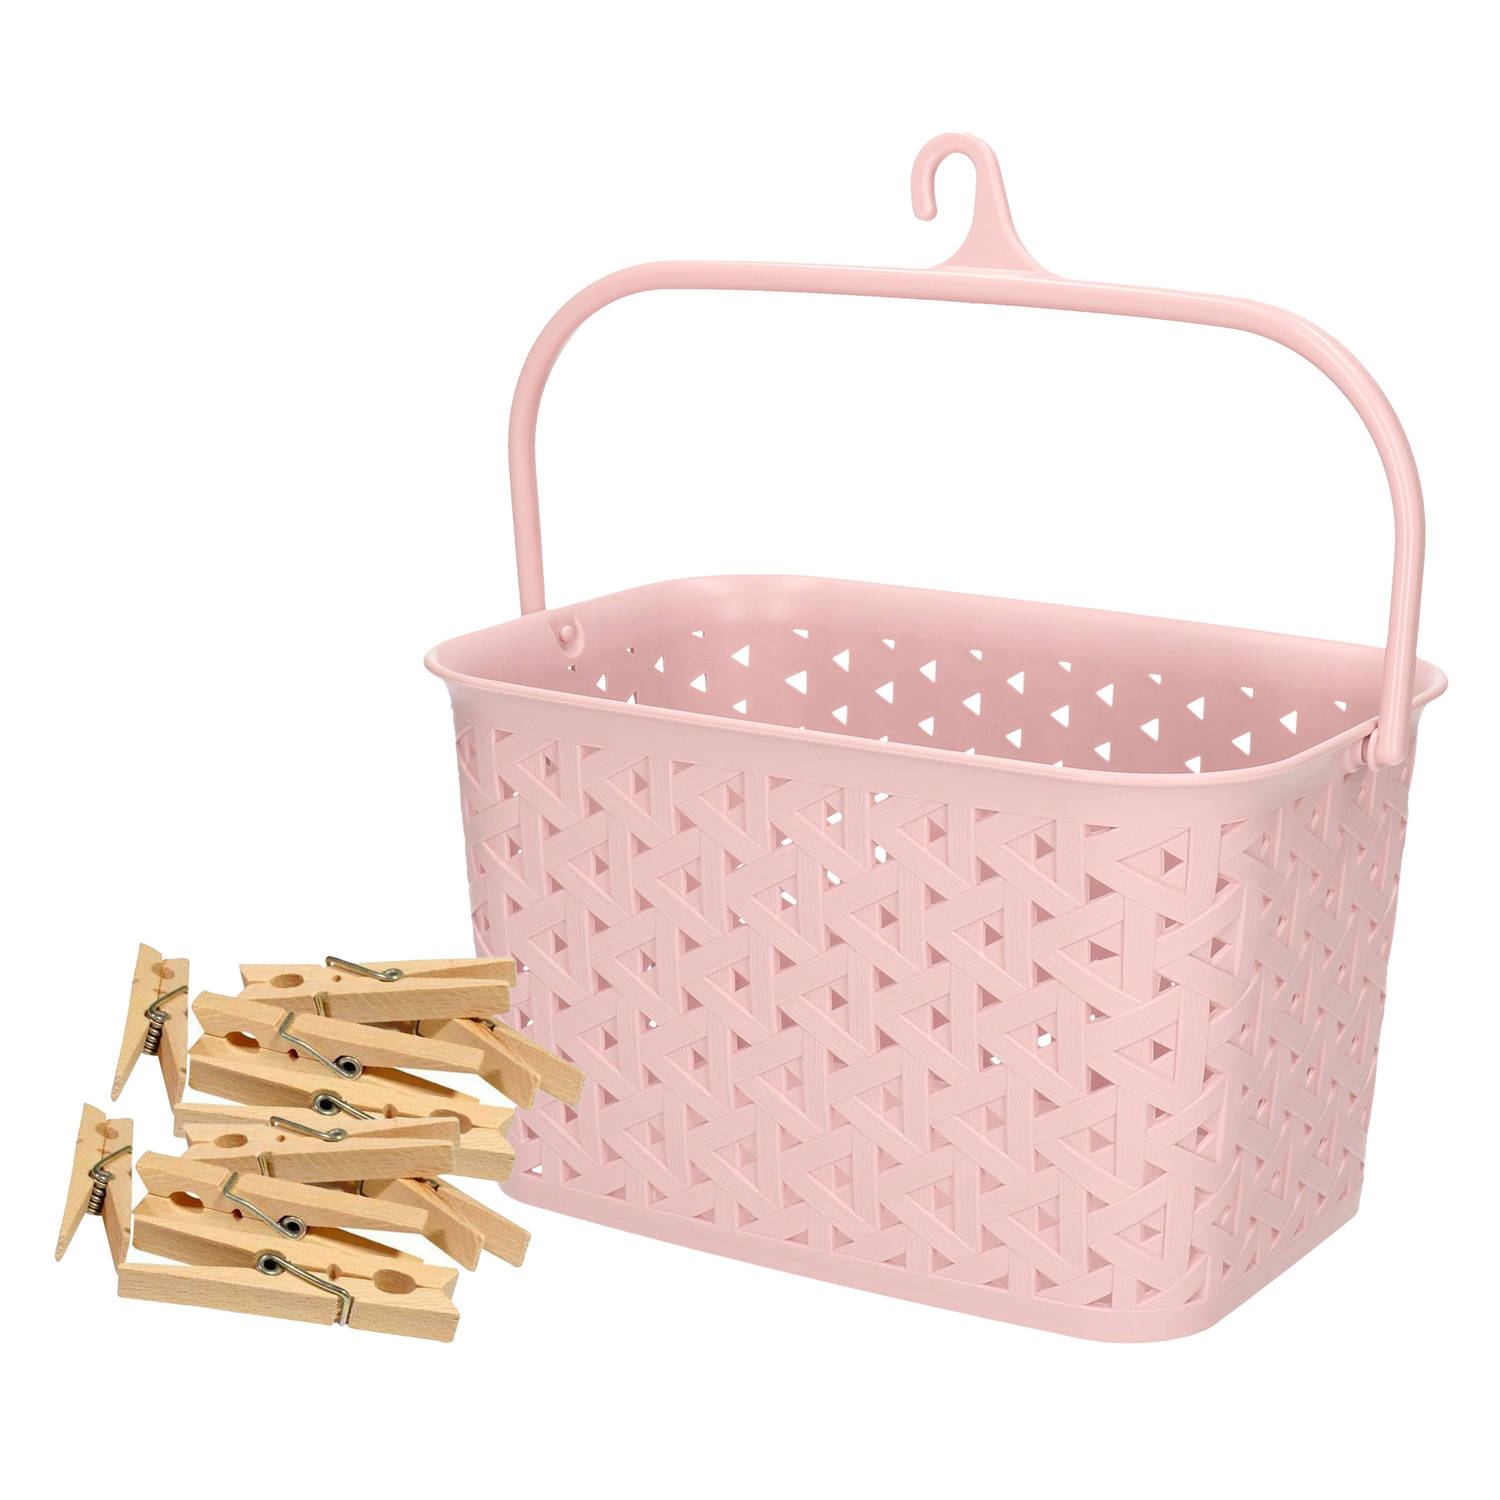 Wasknijpers mandje met ophanghaak - roze - gevuld met 96x houten wasknijpers van 7 cm - knijperszakken